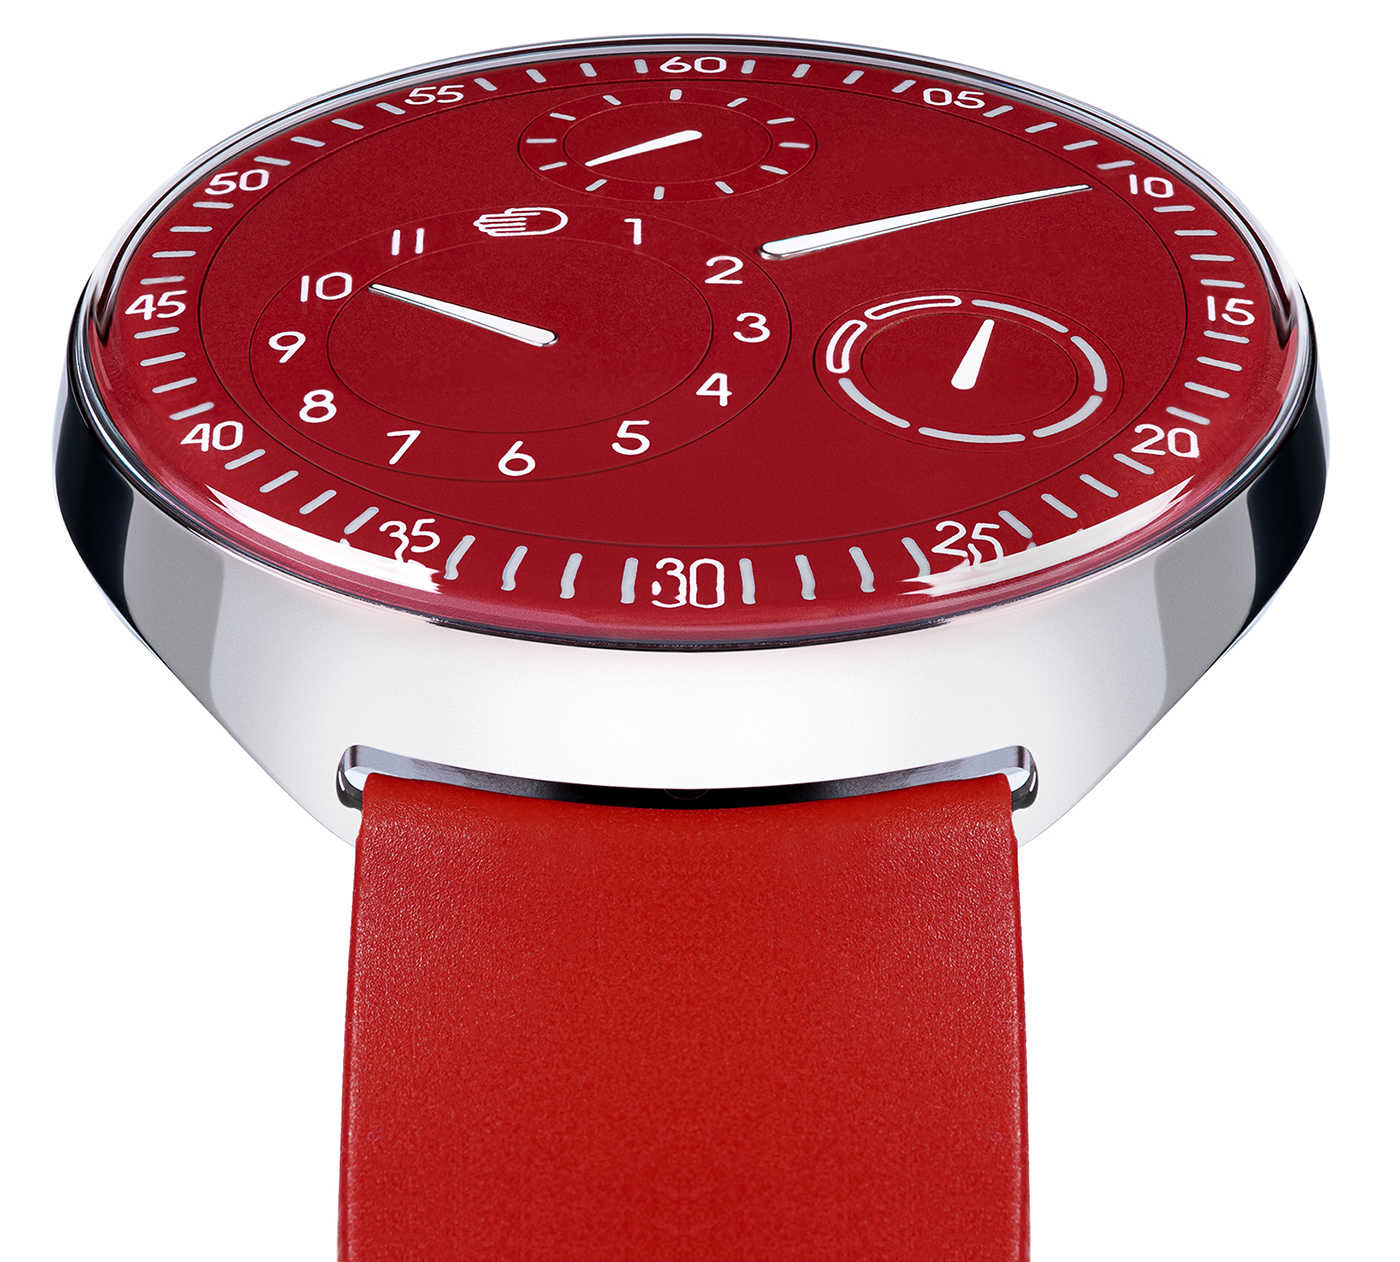 Ressence представляет лимитированную серию красных часов Type 1 Slim